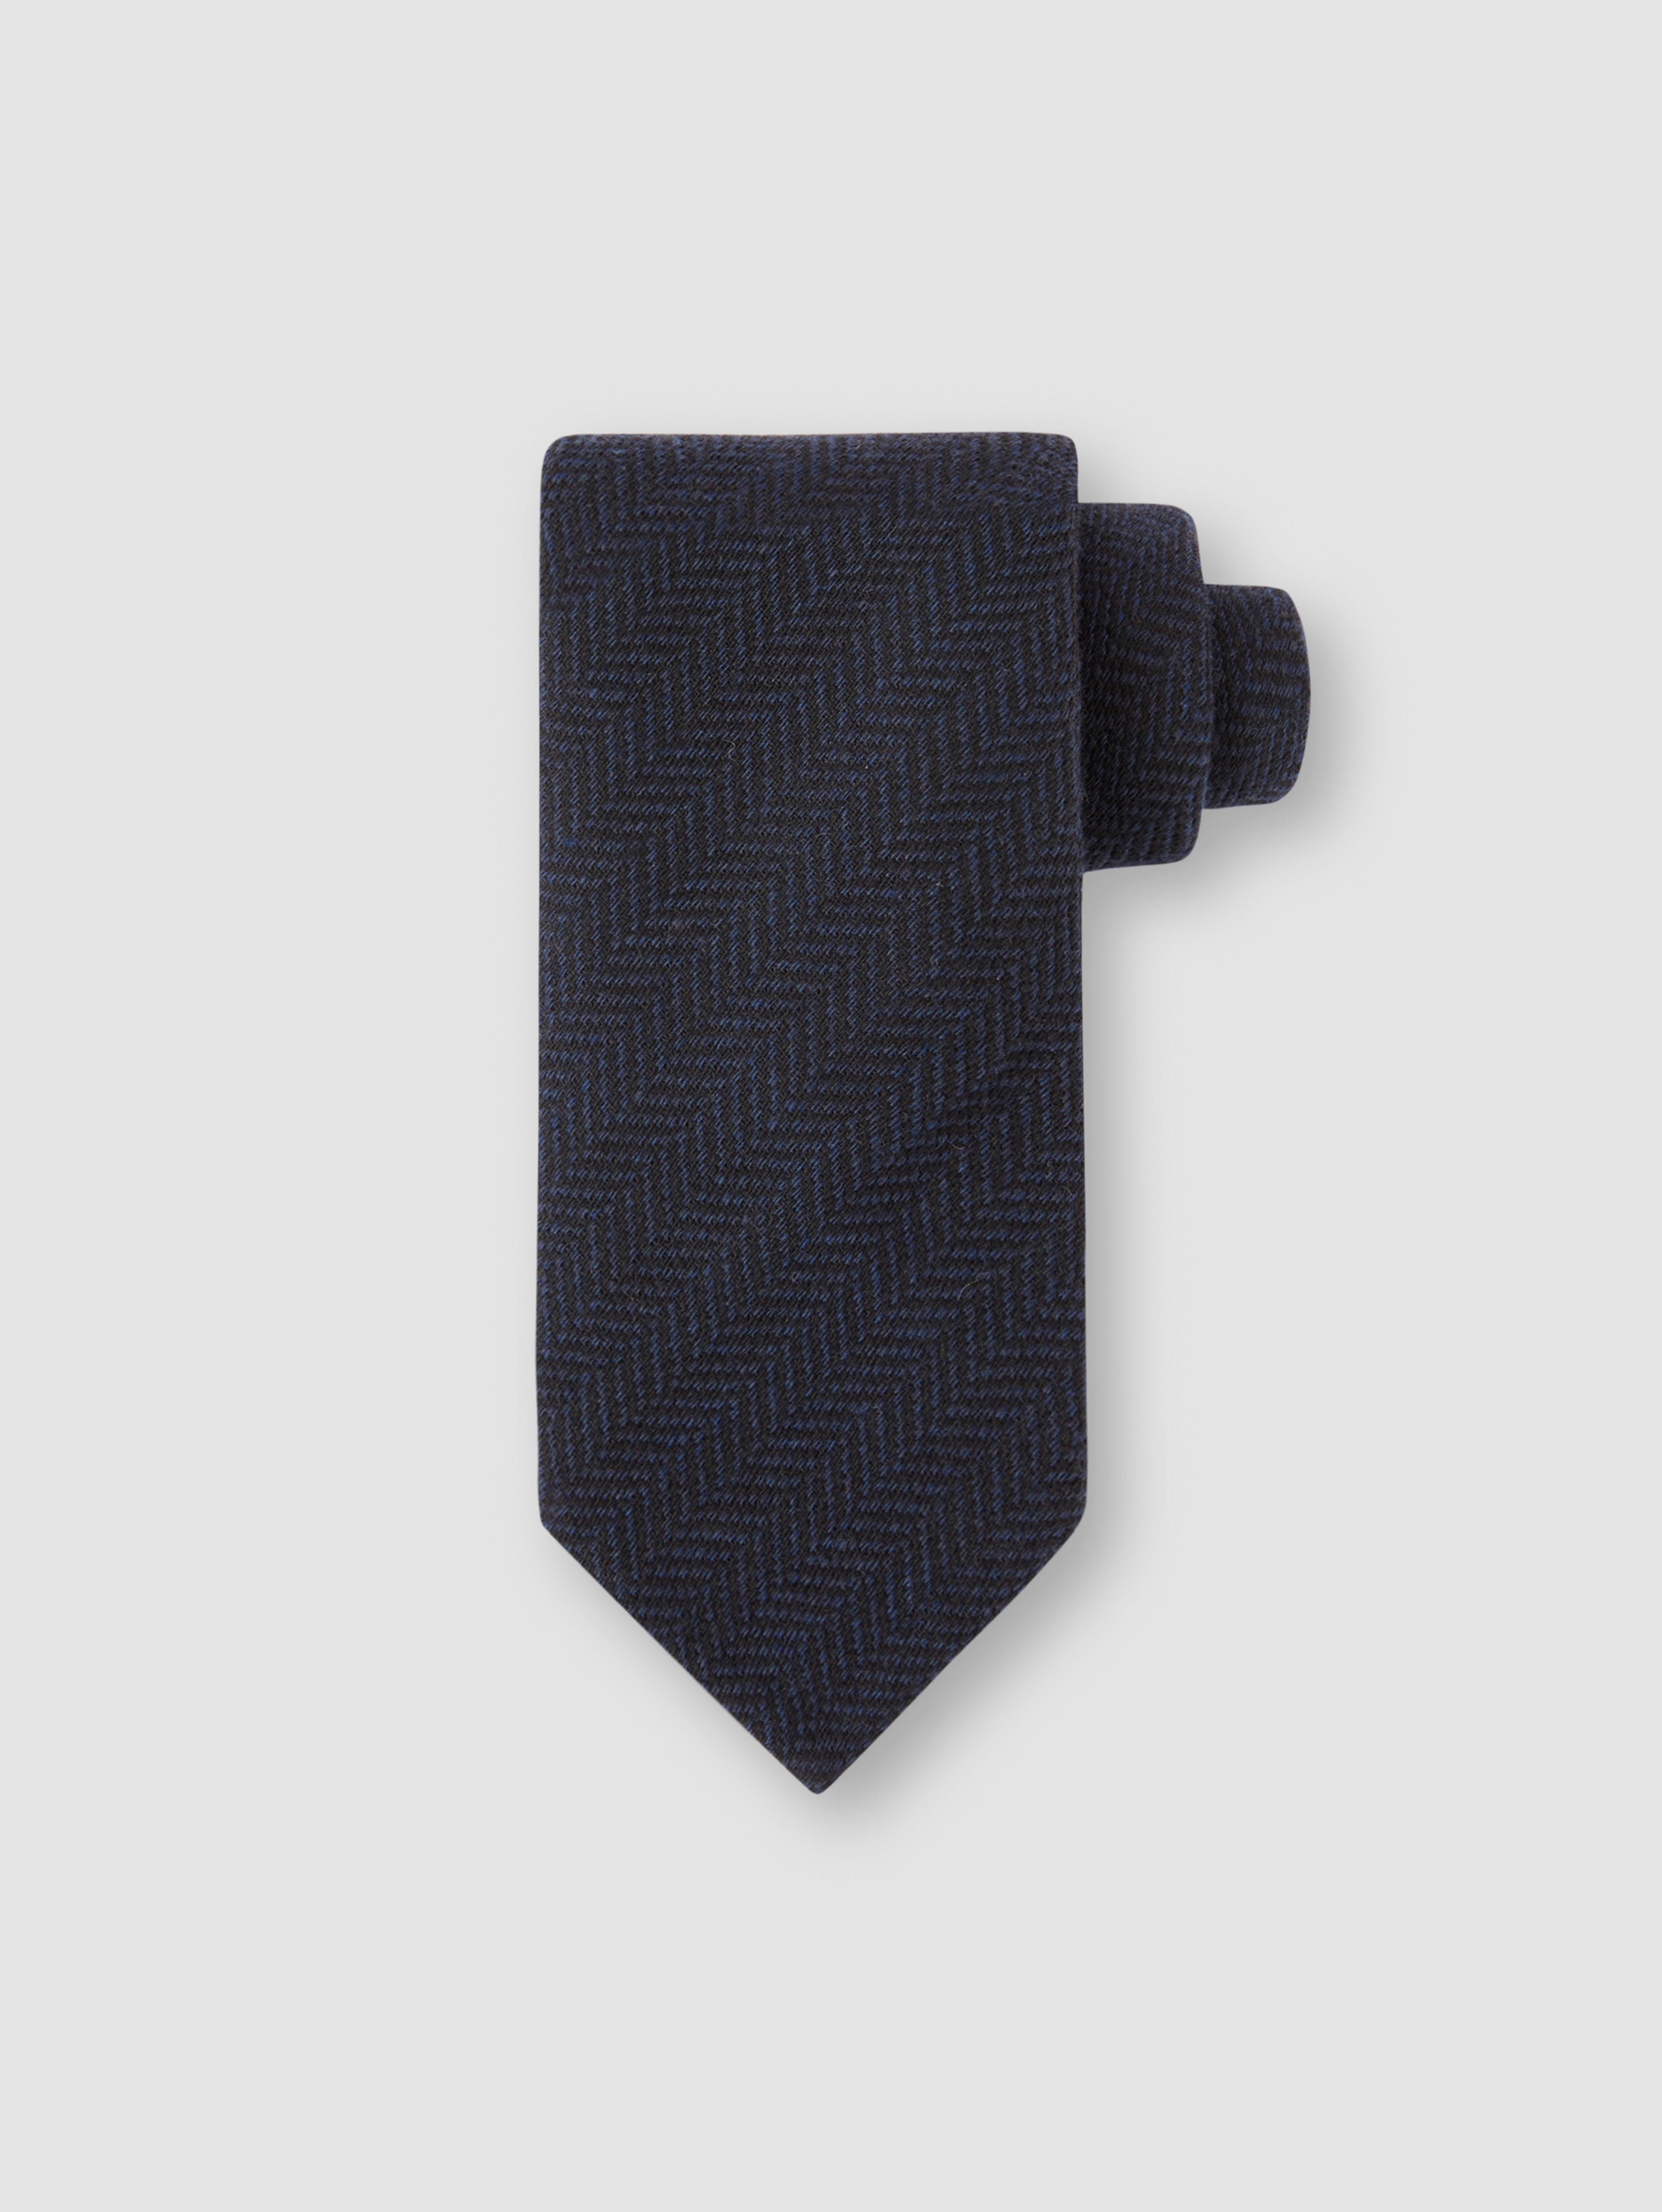 Wool Herringbone Tie Navy Product Image